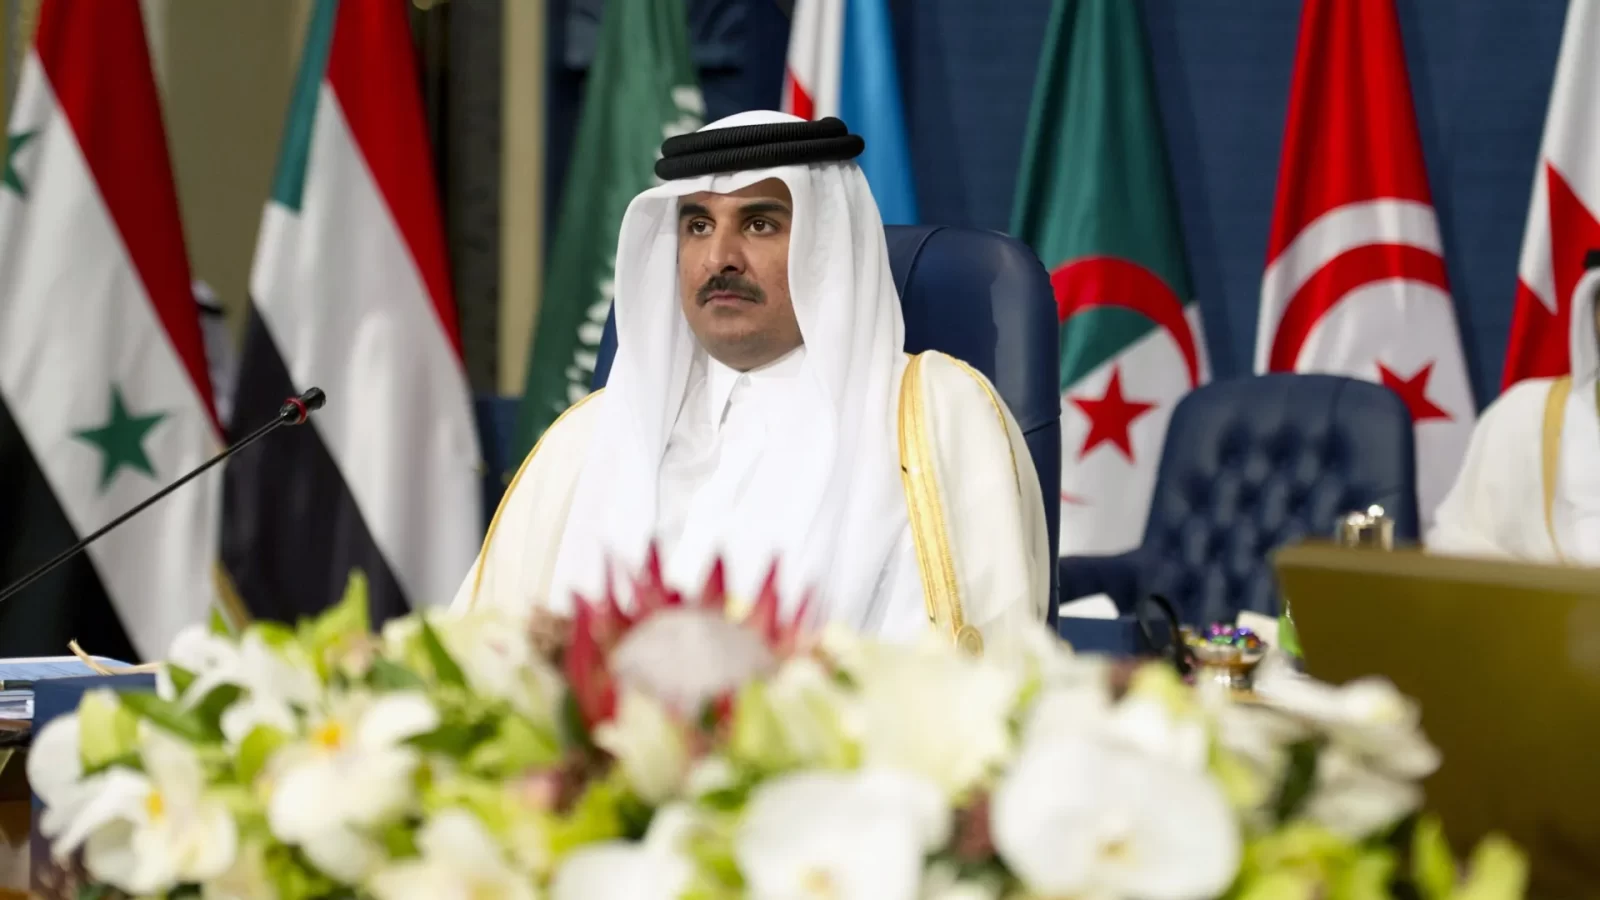 بعد مغادرتها فجأة/ أمير قطر يعلّق على مشاركته في القمة العربية